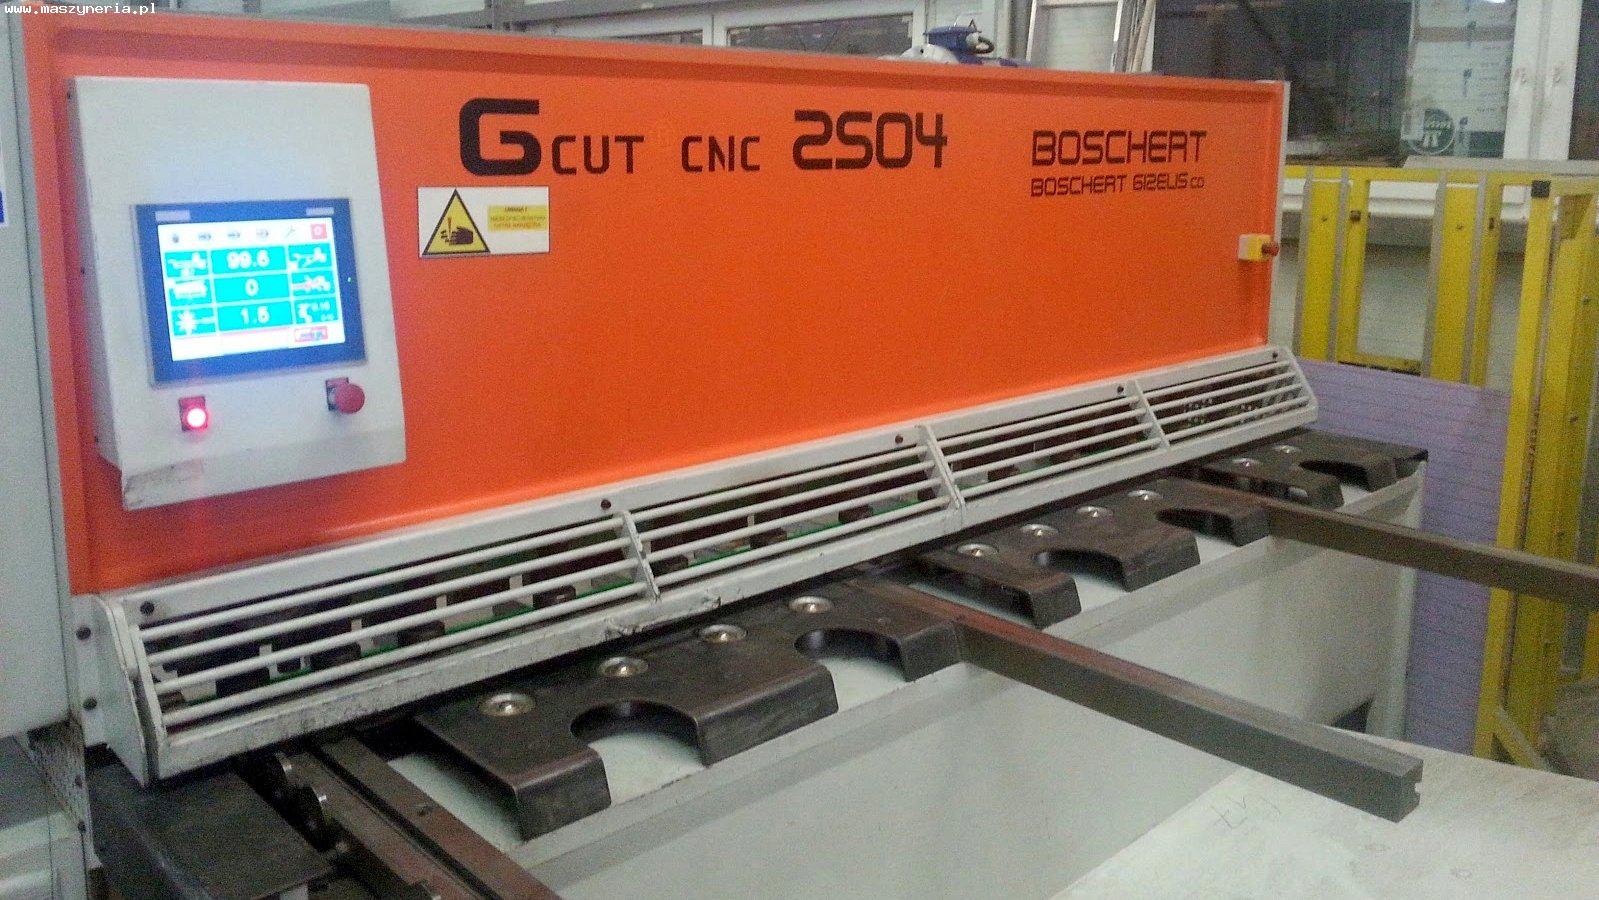 Cesoie a ghigliottina BOSCHERT G CUT 2504 CNC in vendita - foto 1